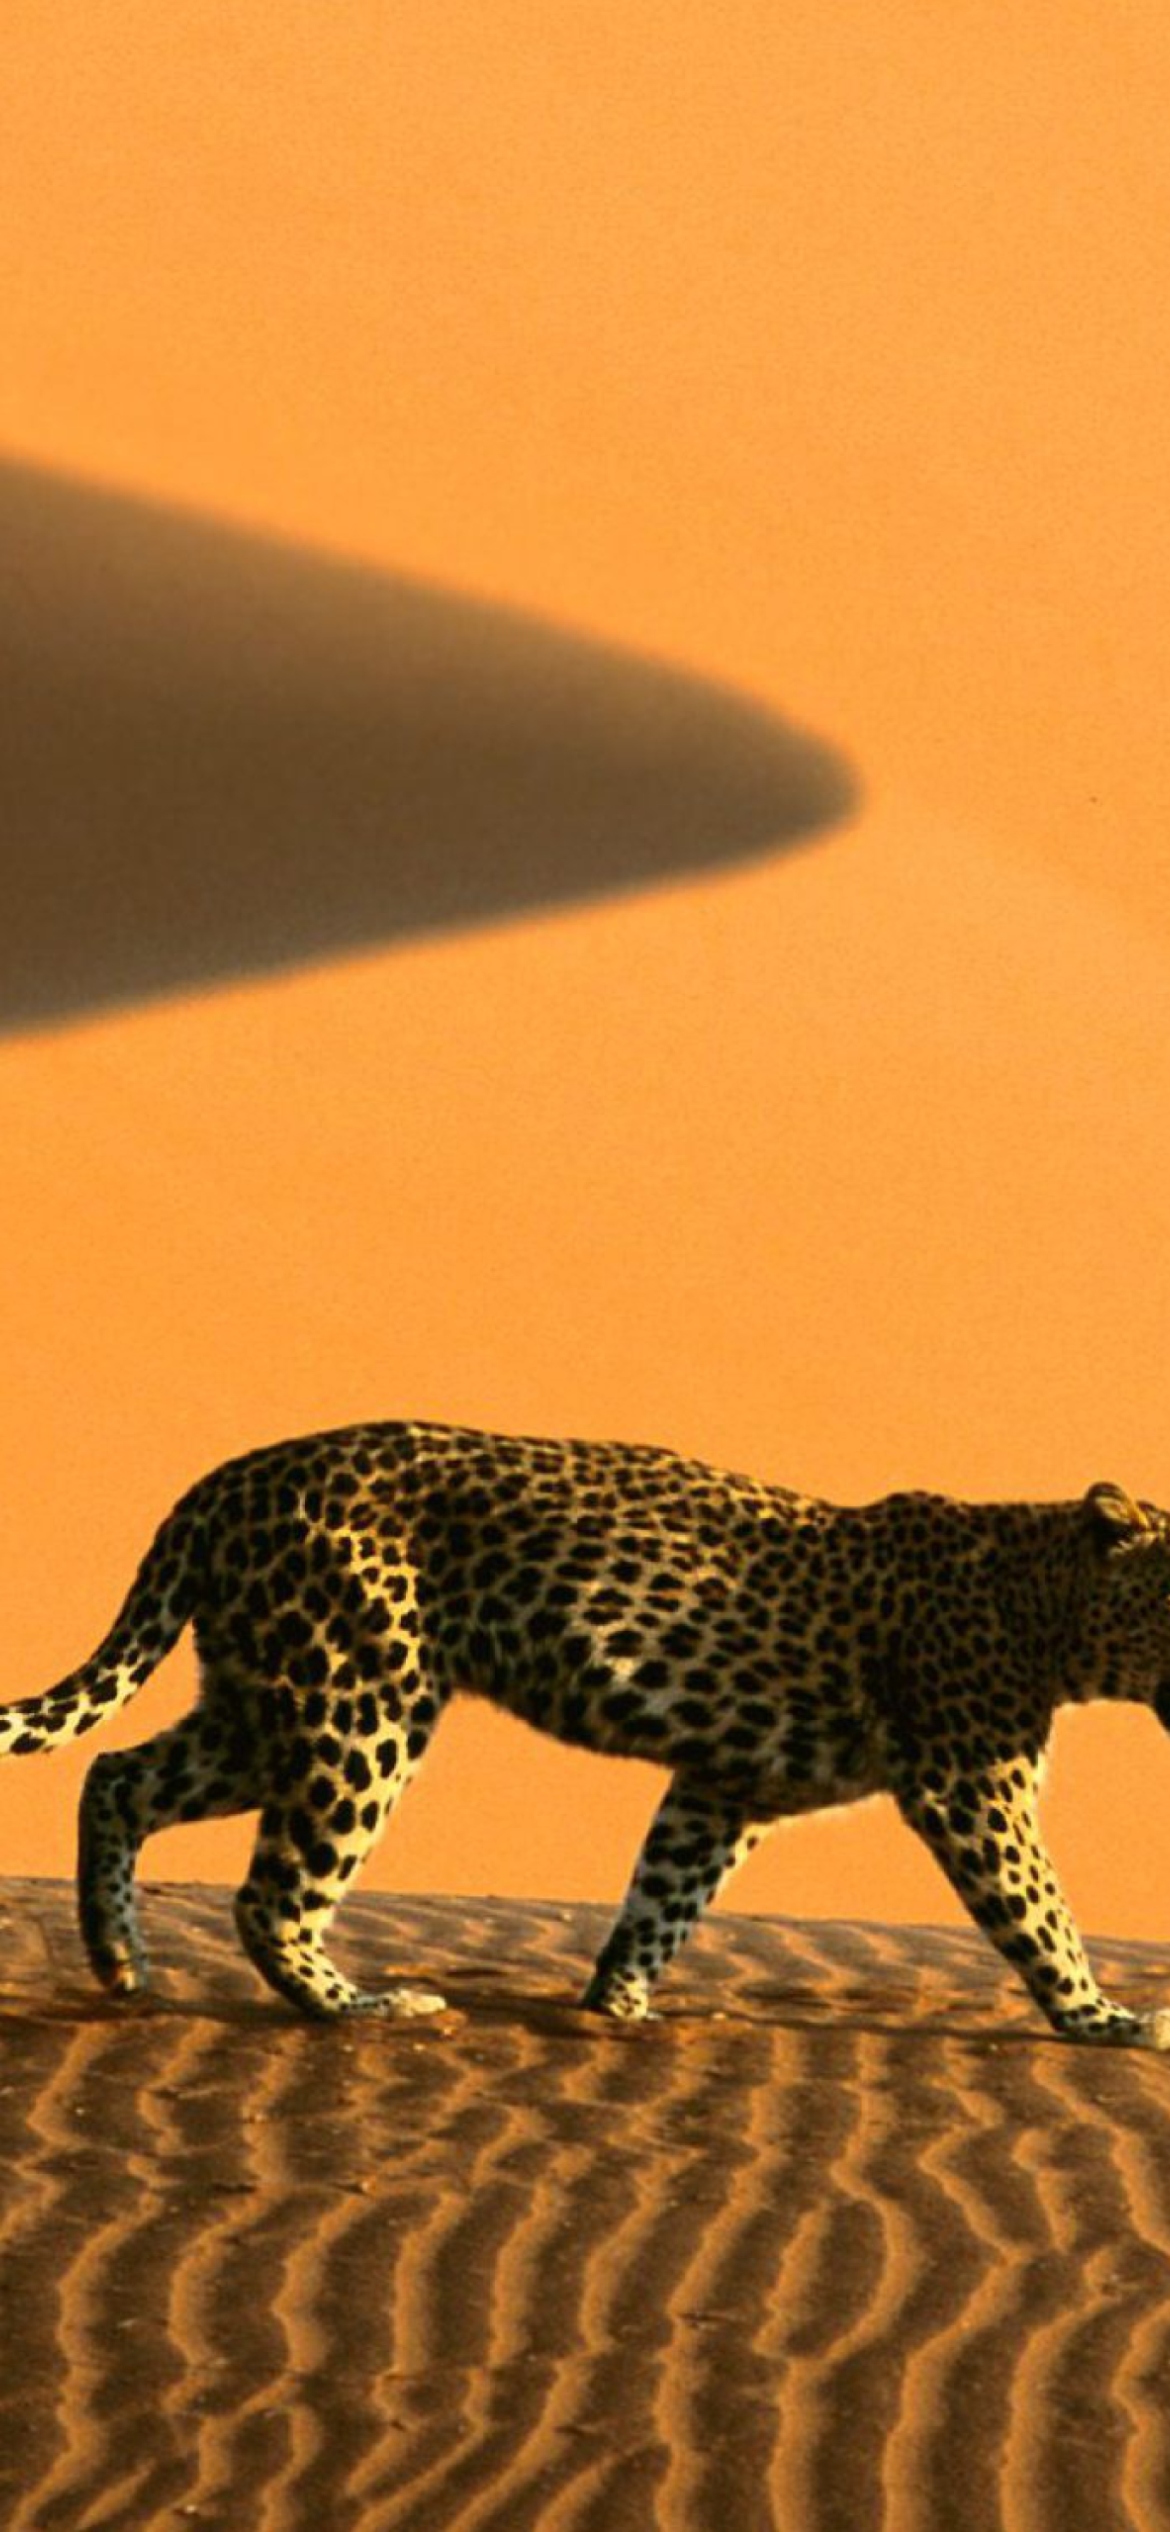 Обои Cheetah In Desert 1170x2532